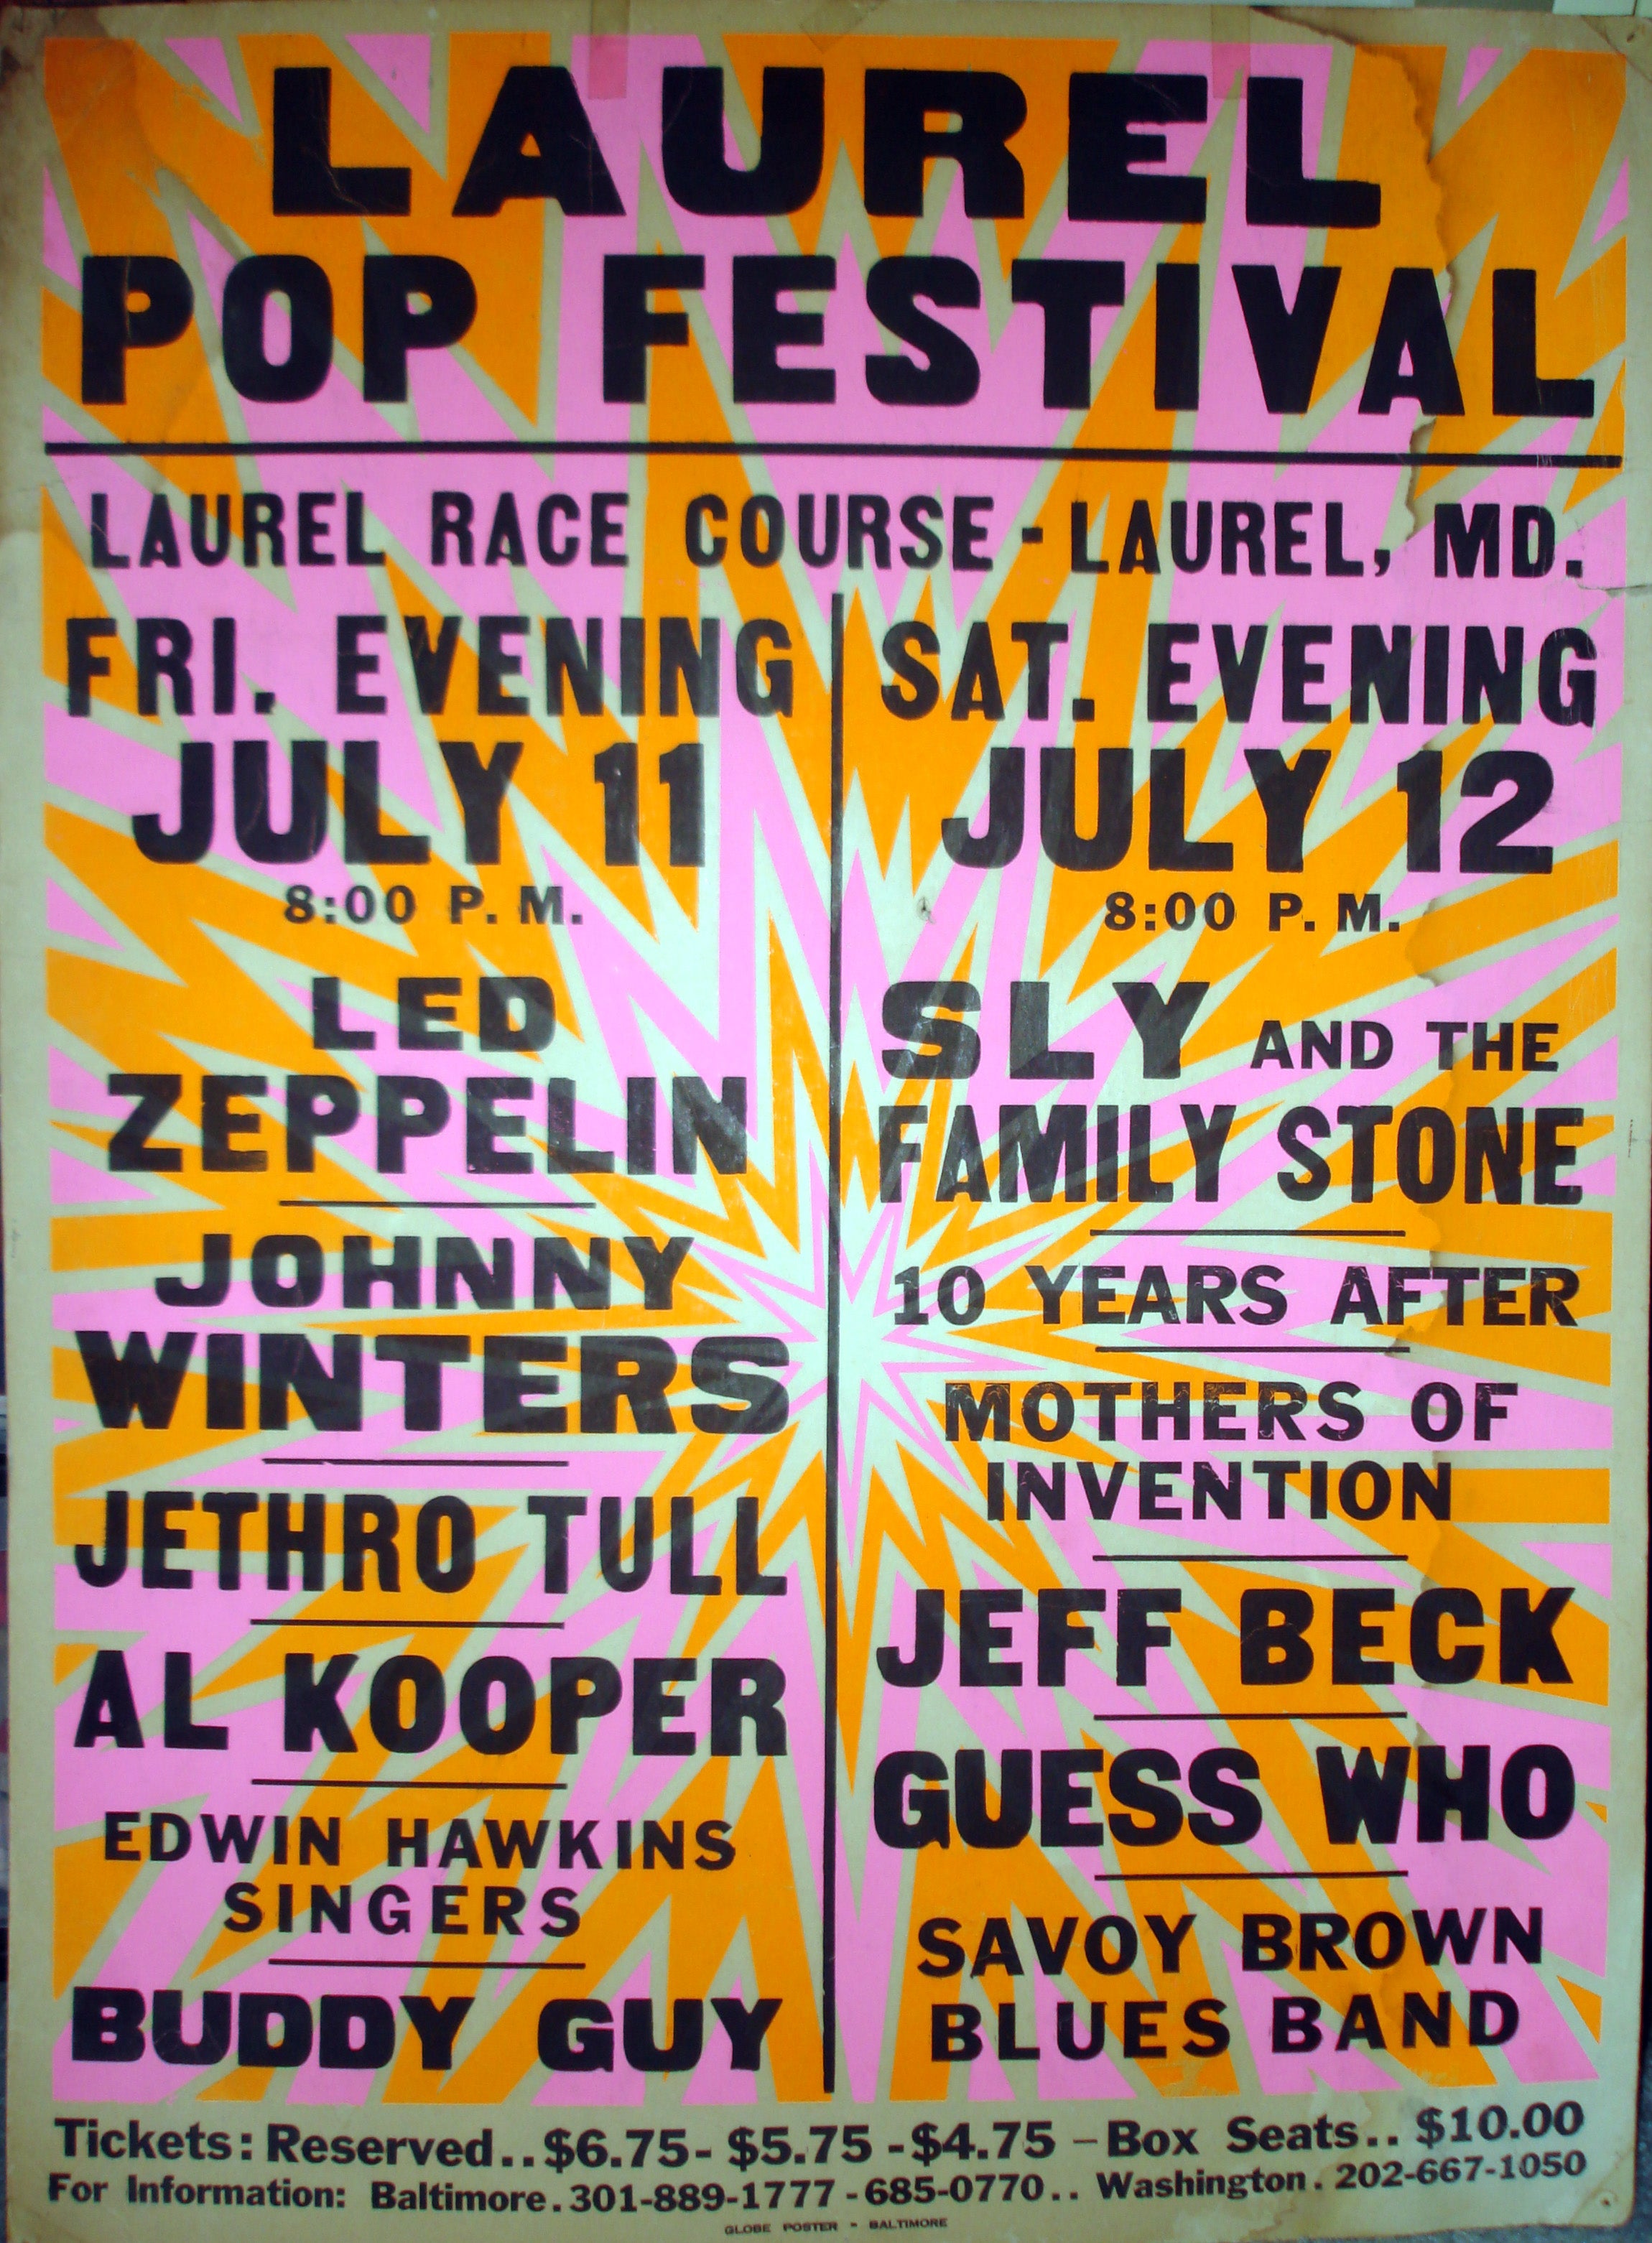 Laurel Pop Festival, Baltimore, Maryland, July 1969